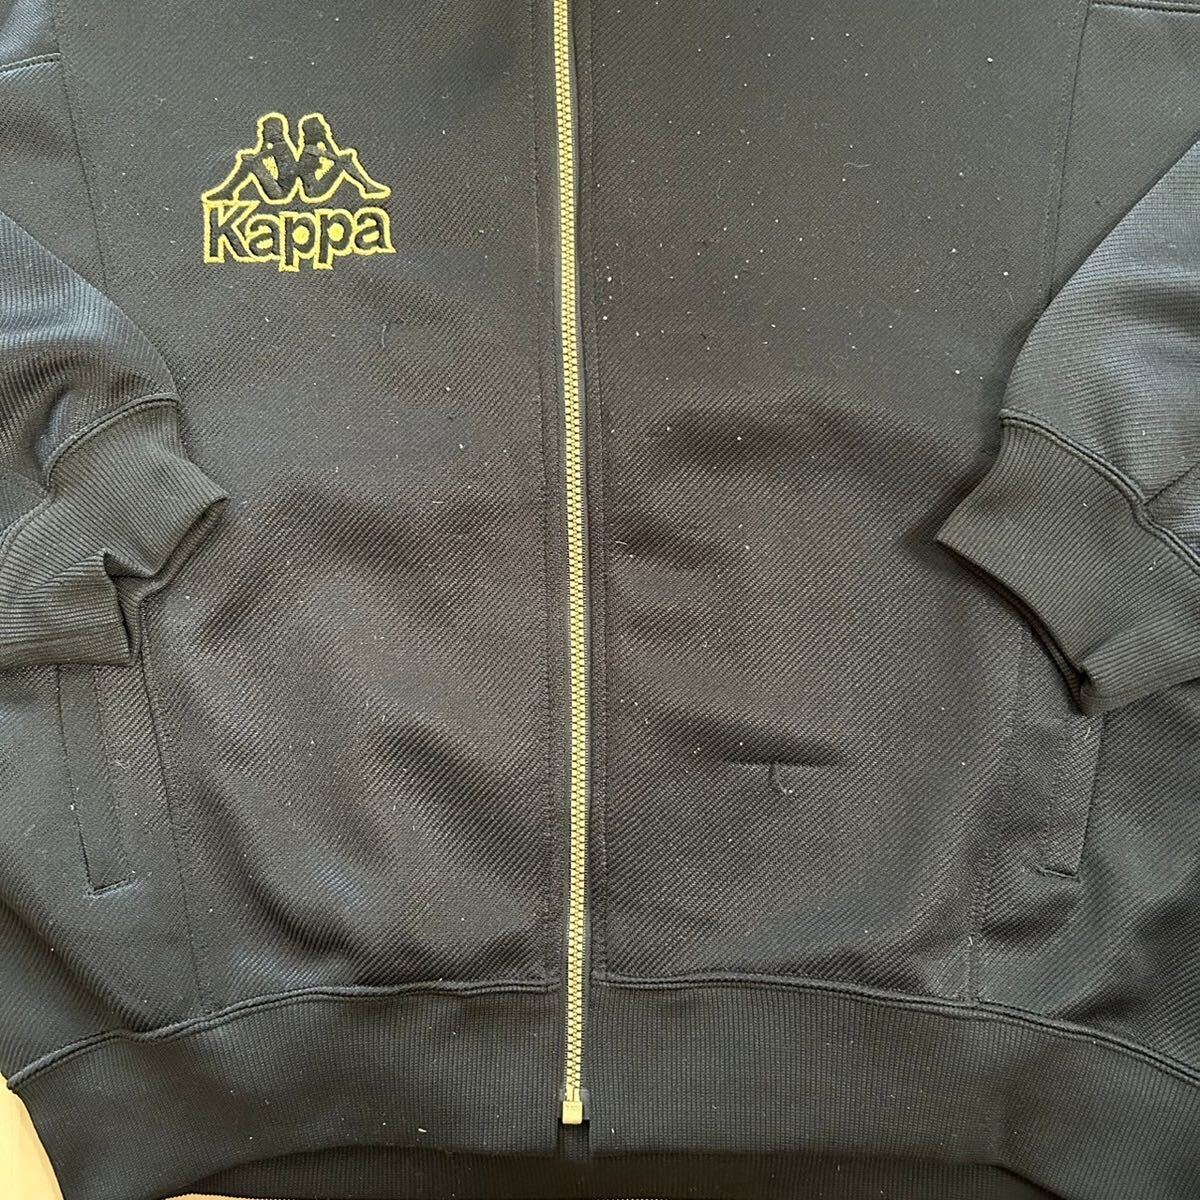 90s Kappa Kappa спортивная куртка retro джерси черный мужской M размер соответствует Vintage б/у одежда 